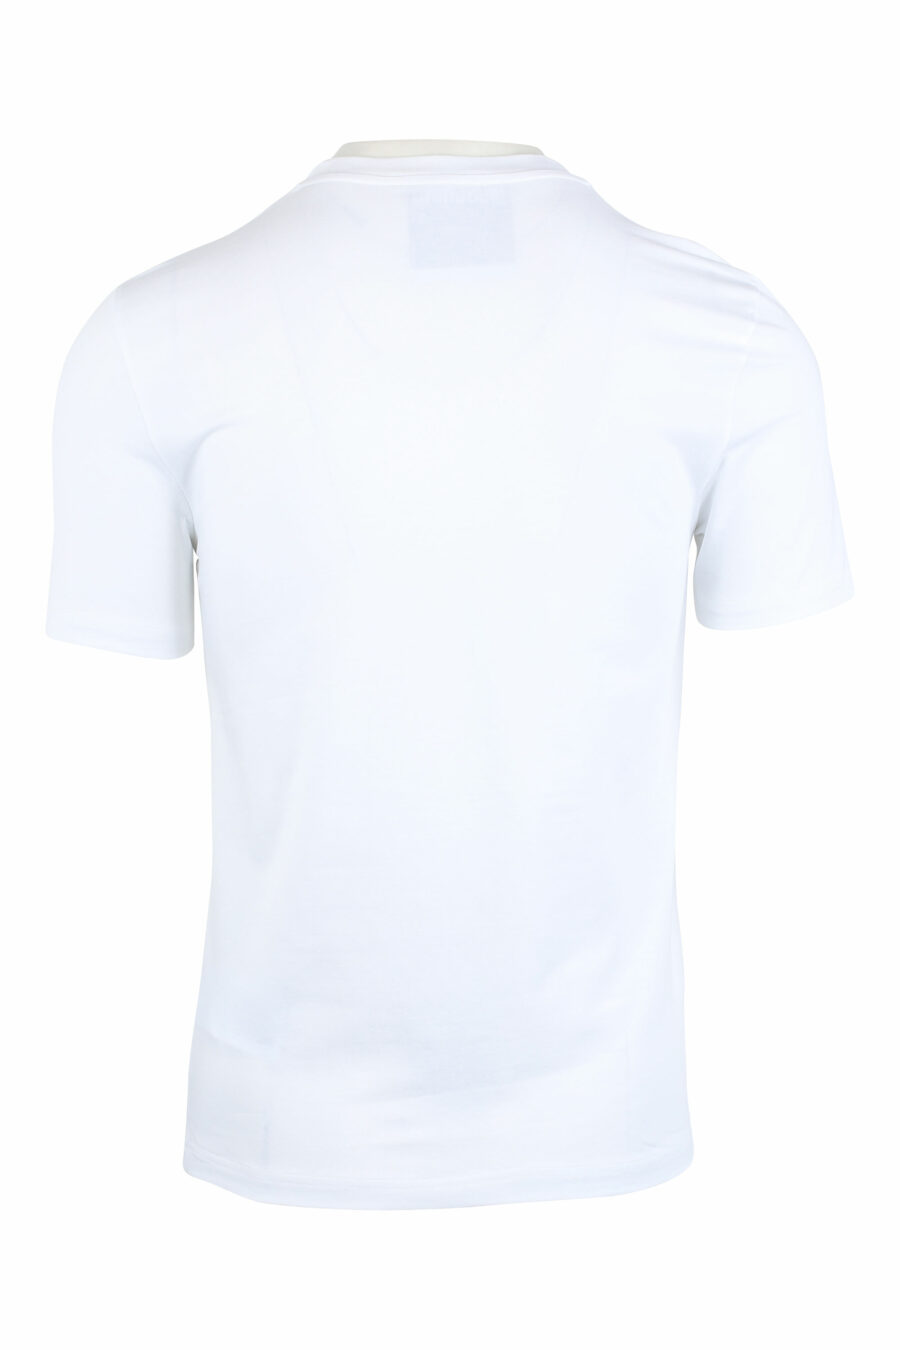 Camiseta blanca con logo "signature" - IMG 1354